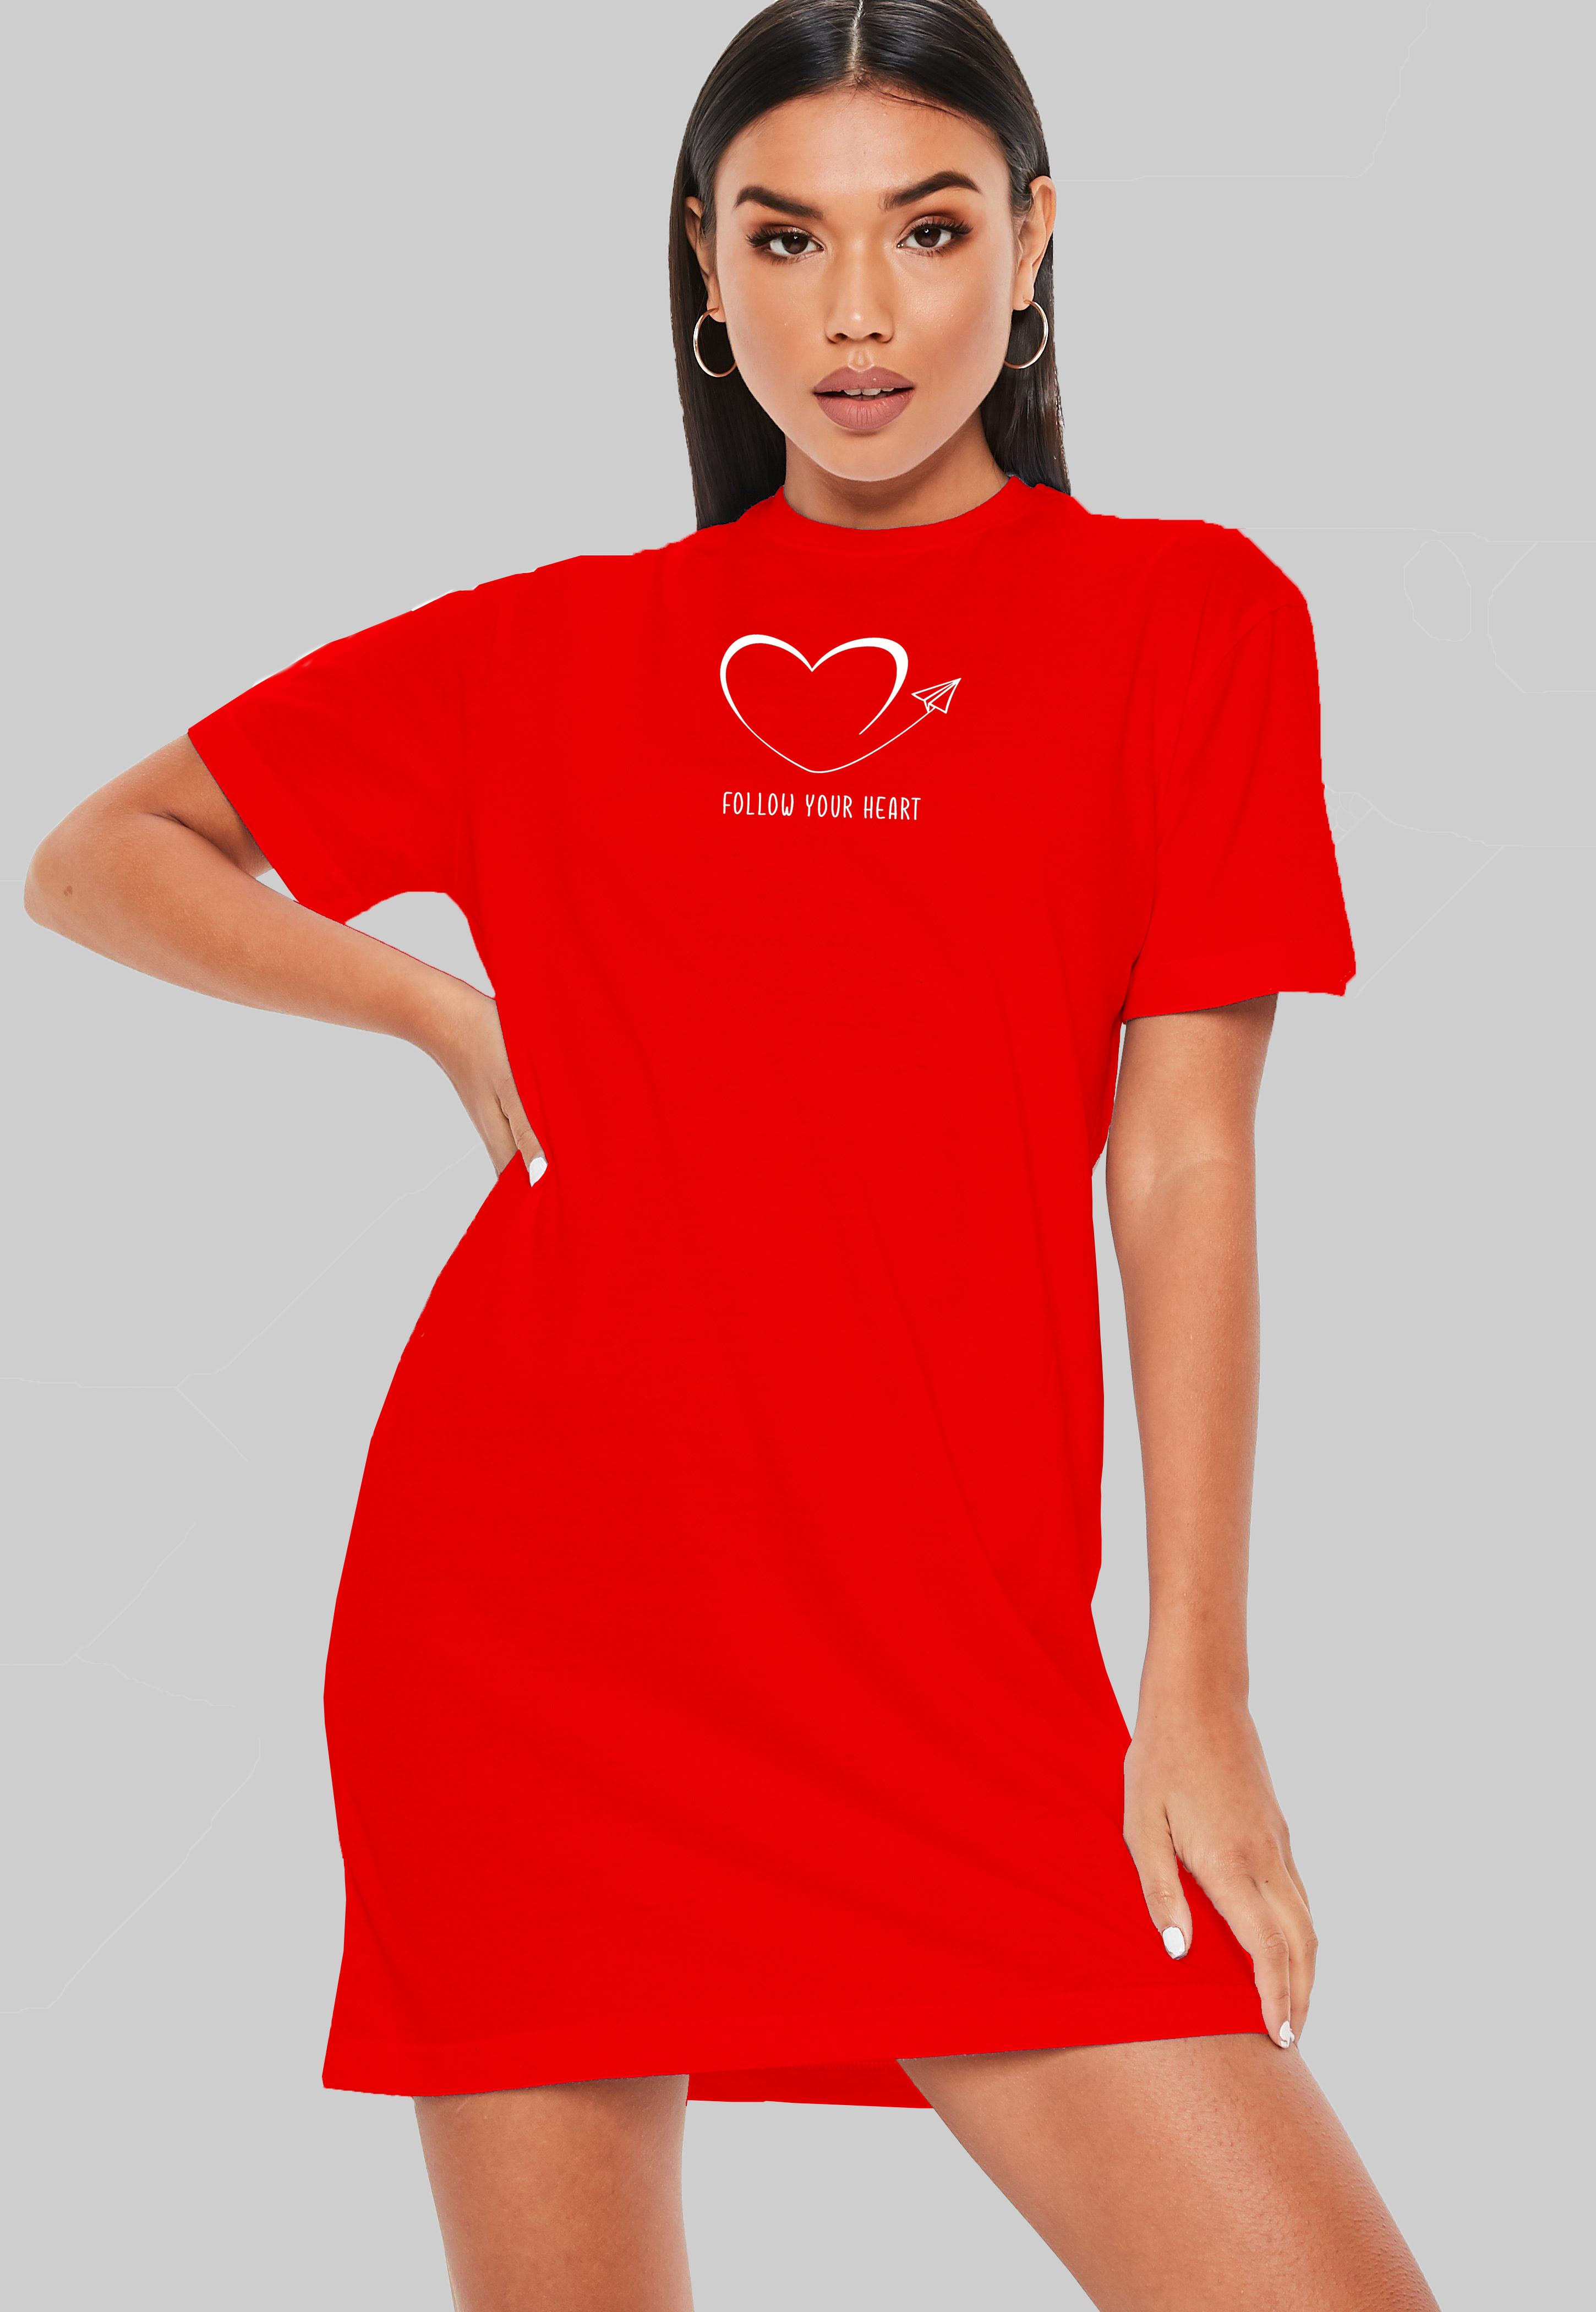 Follow Your Heart T-Shirt Dress